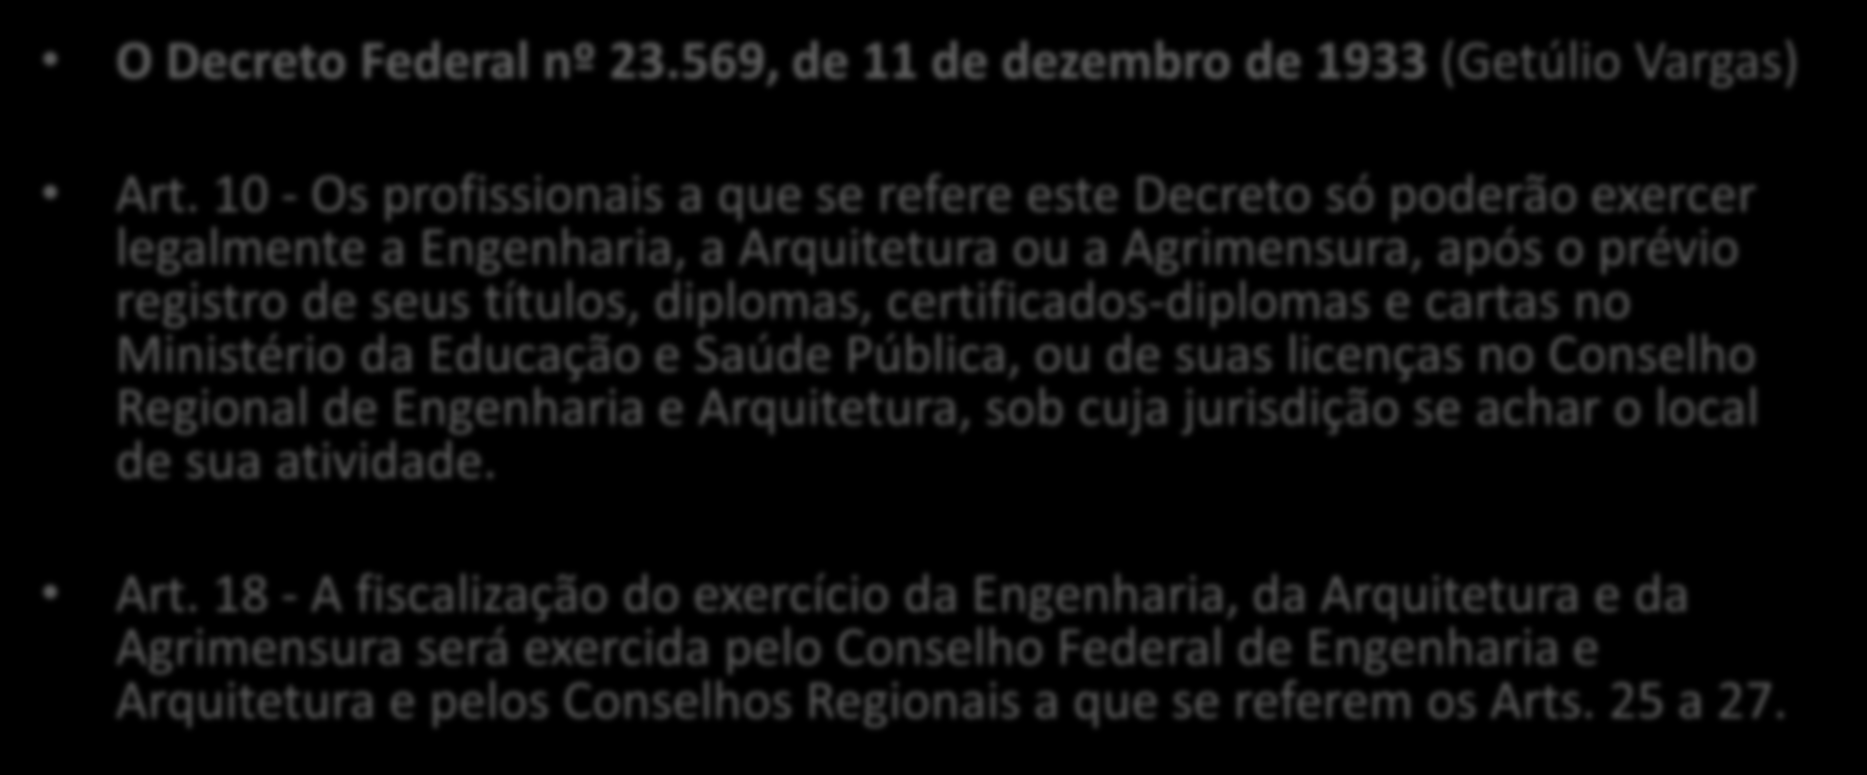 Entidade de Fiscalização: CREA O Decreto Federal nº 23.569, de 11 de dezembro de 1933 (Getúlio Vargas) Art.